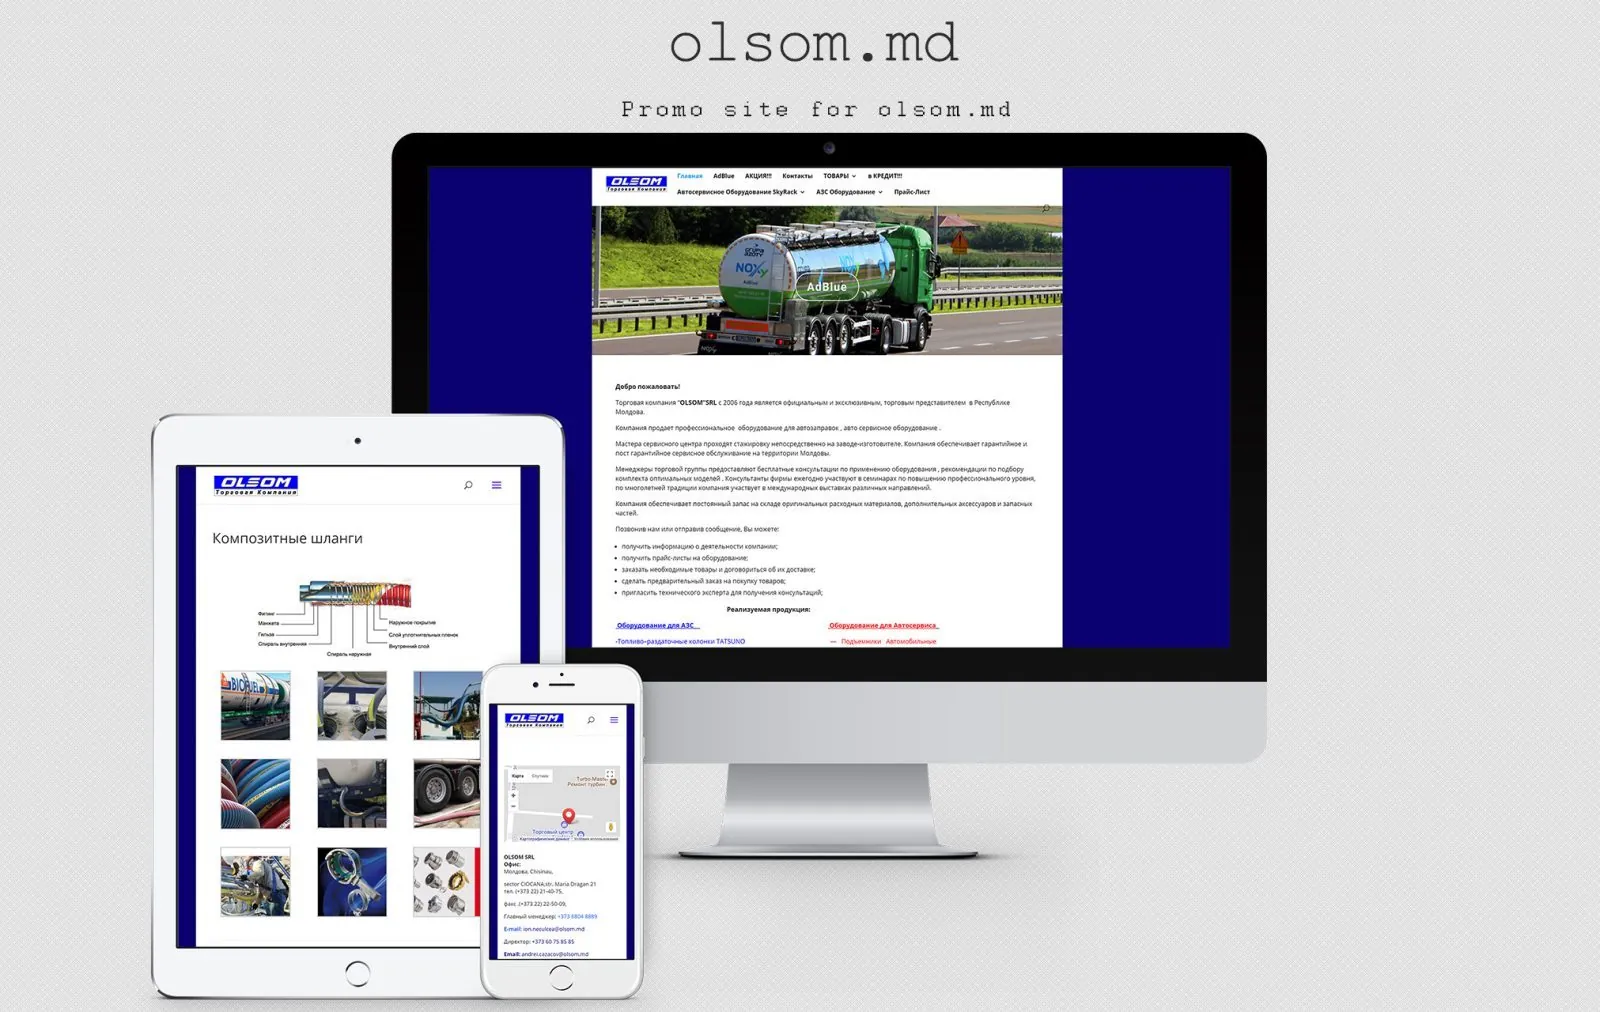 Olsom 1 trading company website